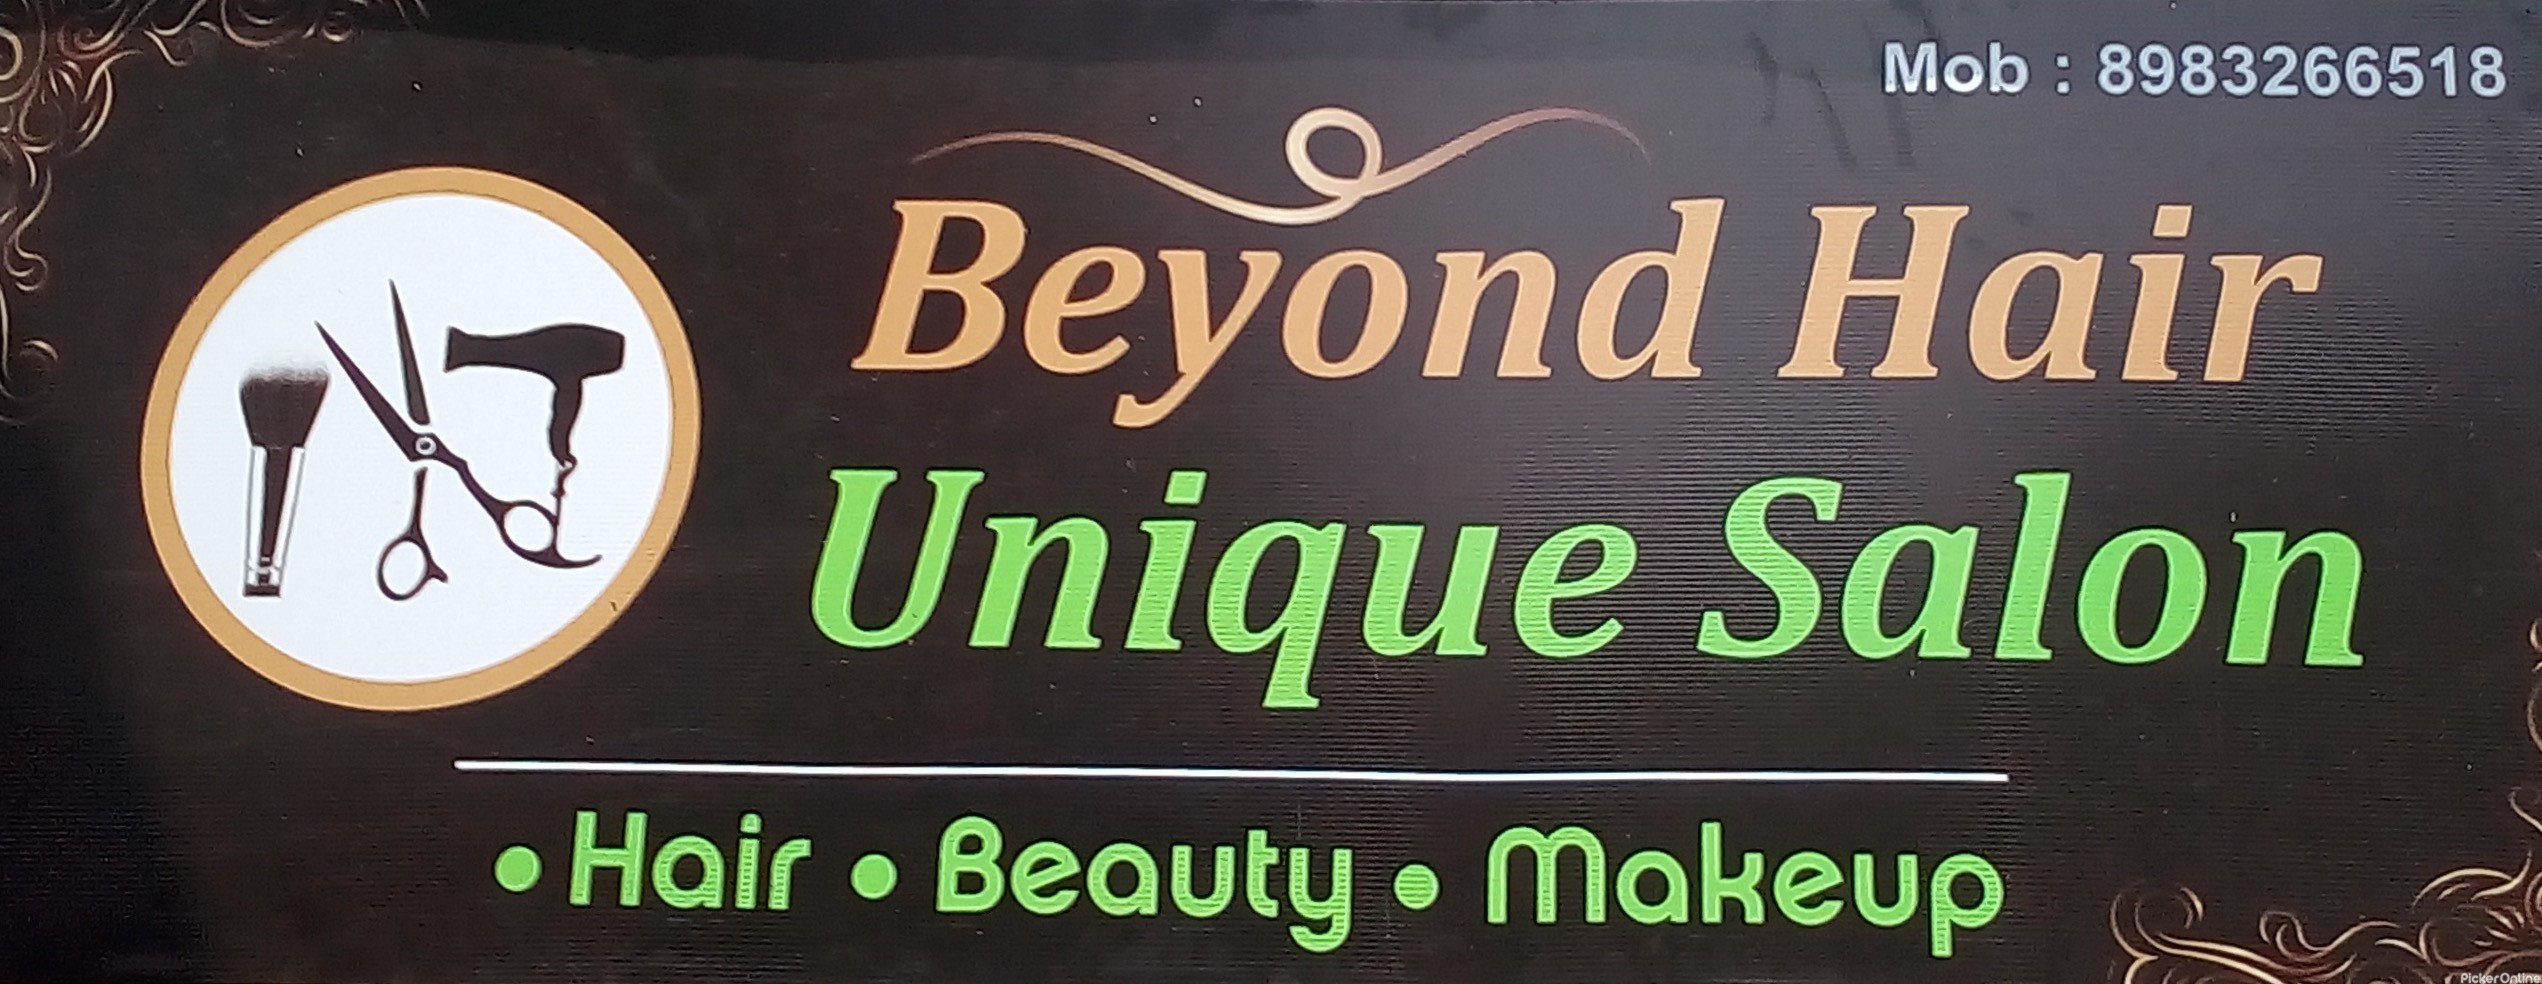 Beyond Hair Unique Salon, Abhyankar Nagar, Nagpur